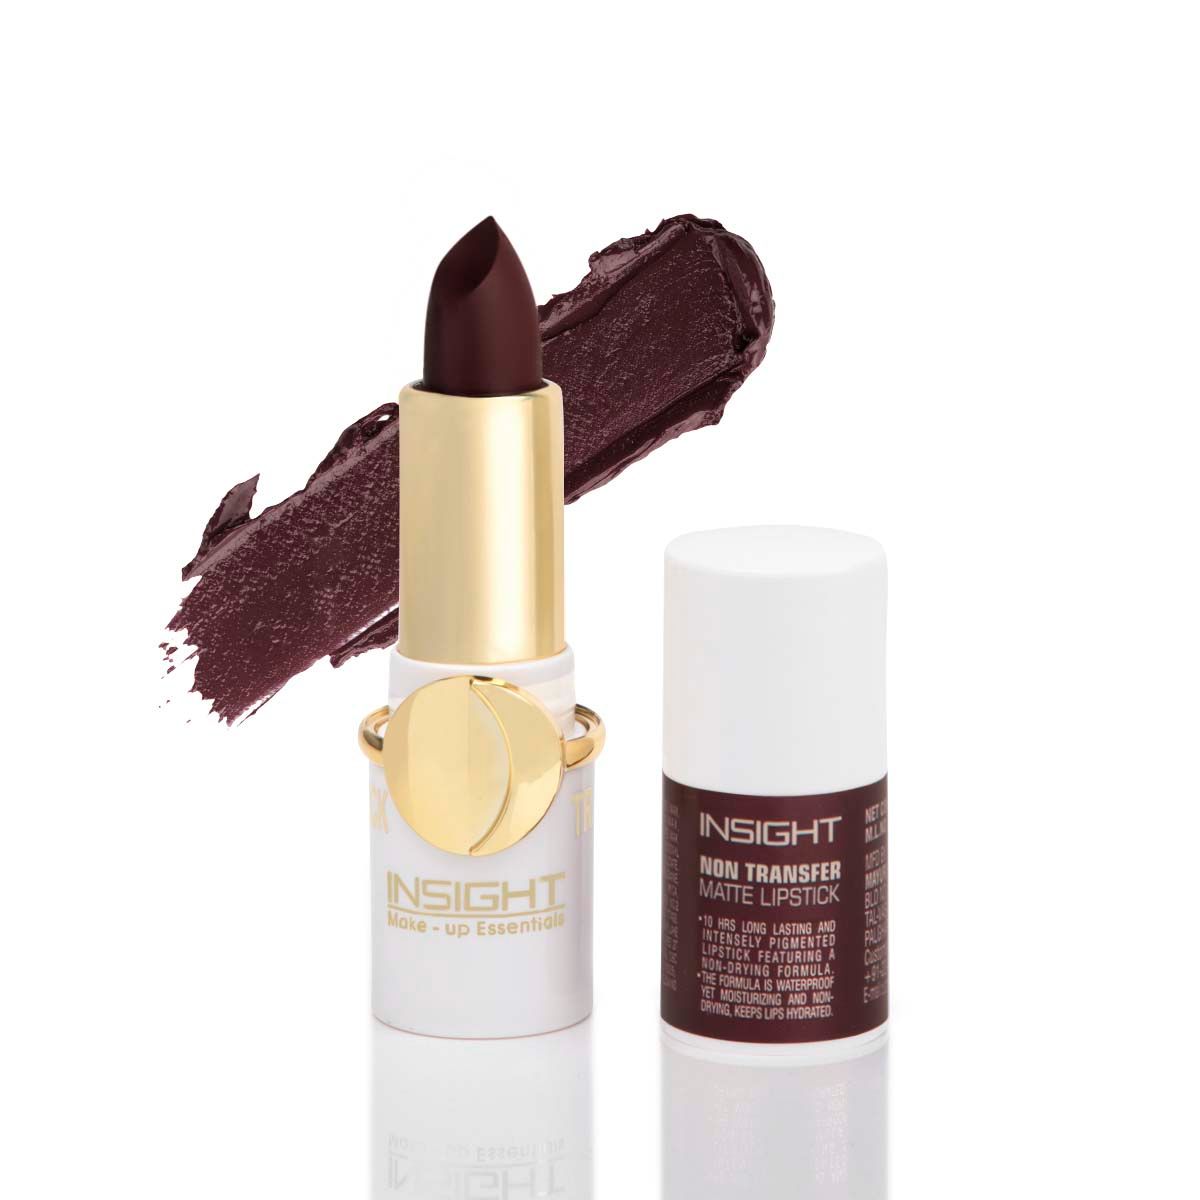 Buy INSIGHT Cosmetics Non Transfer Matte Lipstick (Ll-04)_02 Occult - Purplle